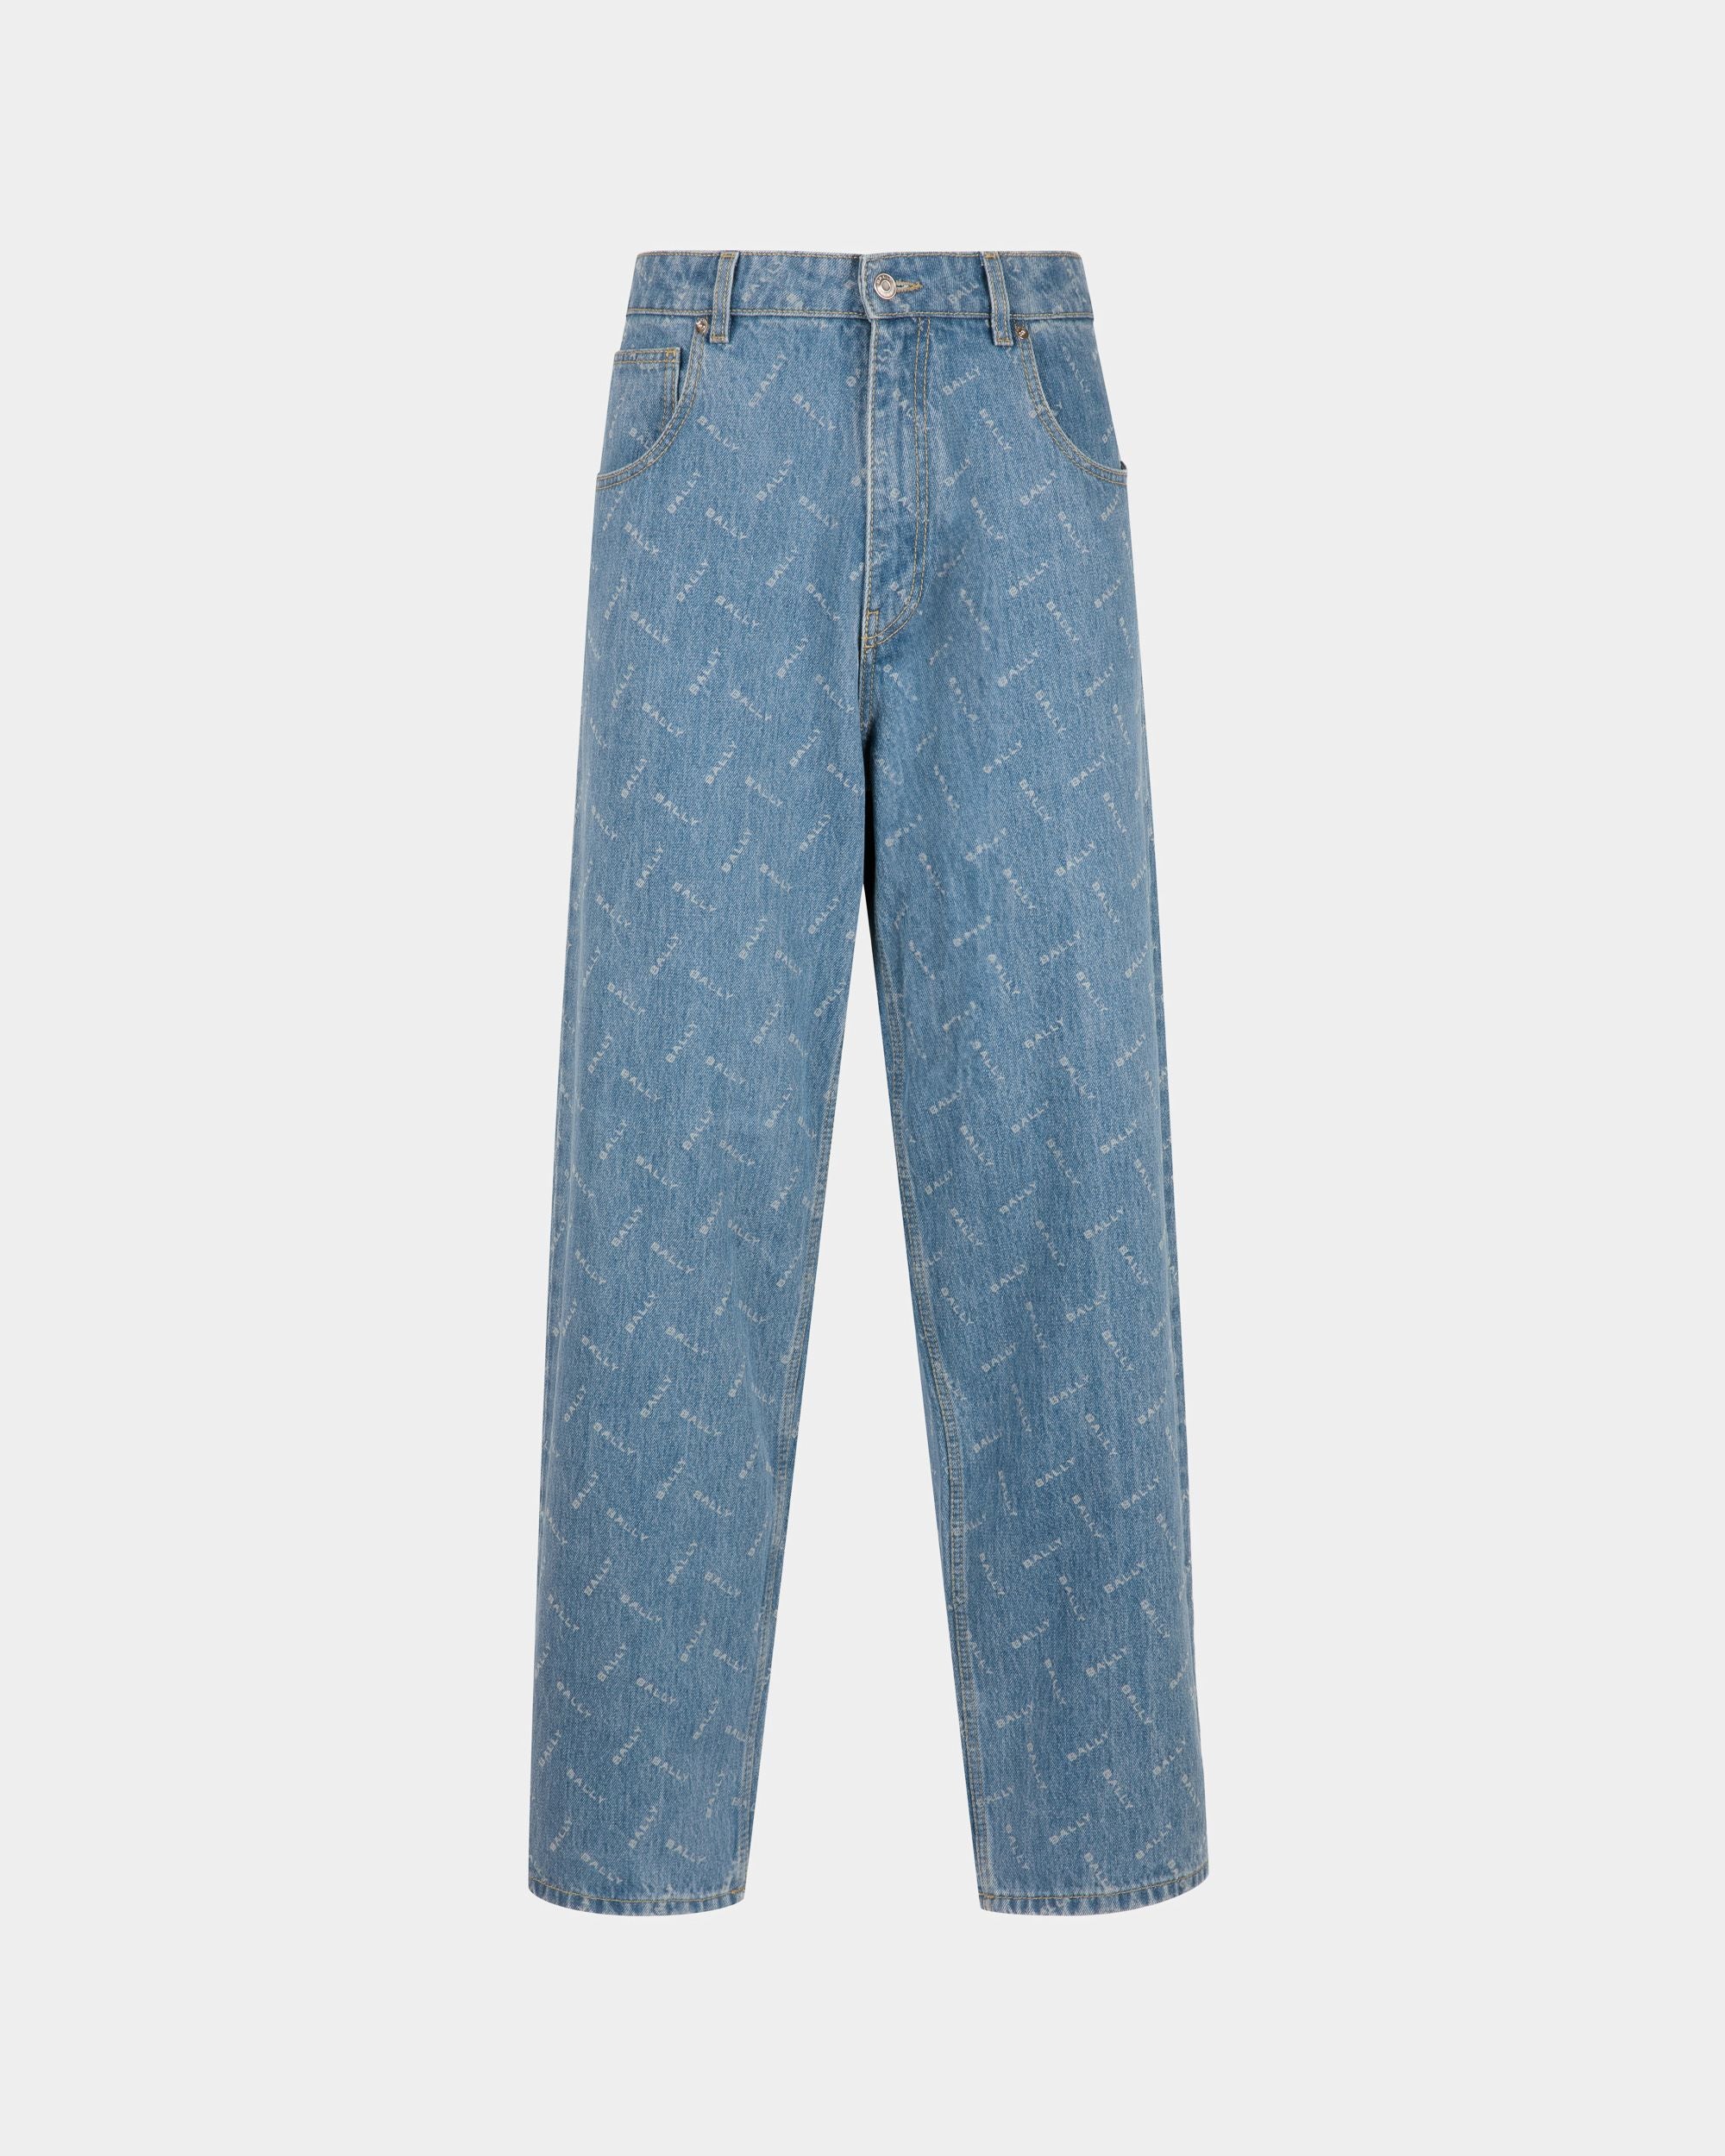 Jeanshose für Herren aus hellblauer Baumwolle | Bally | Still Life Vorderseite